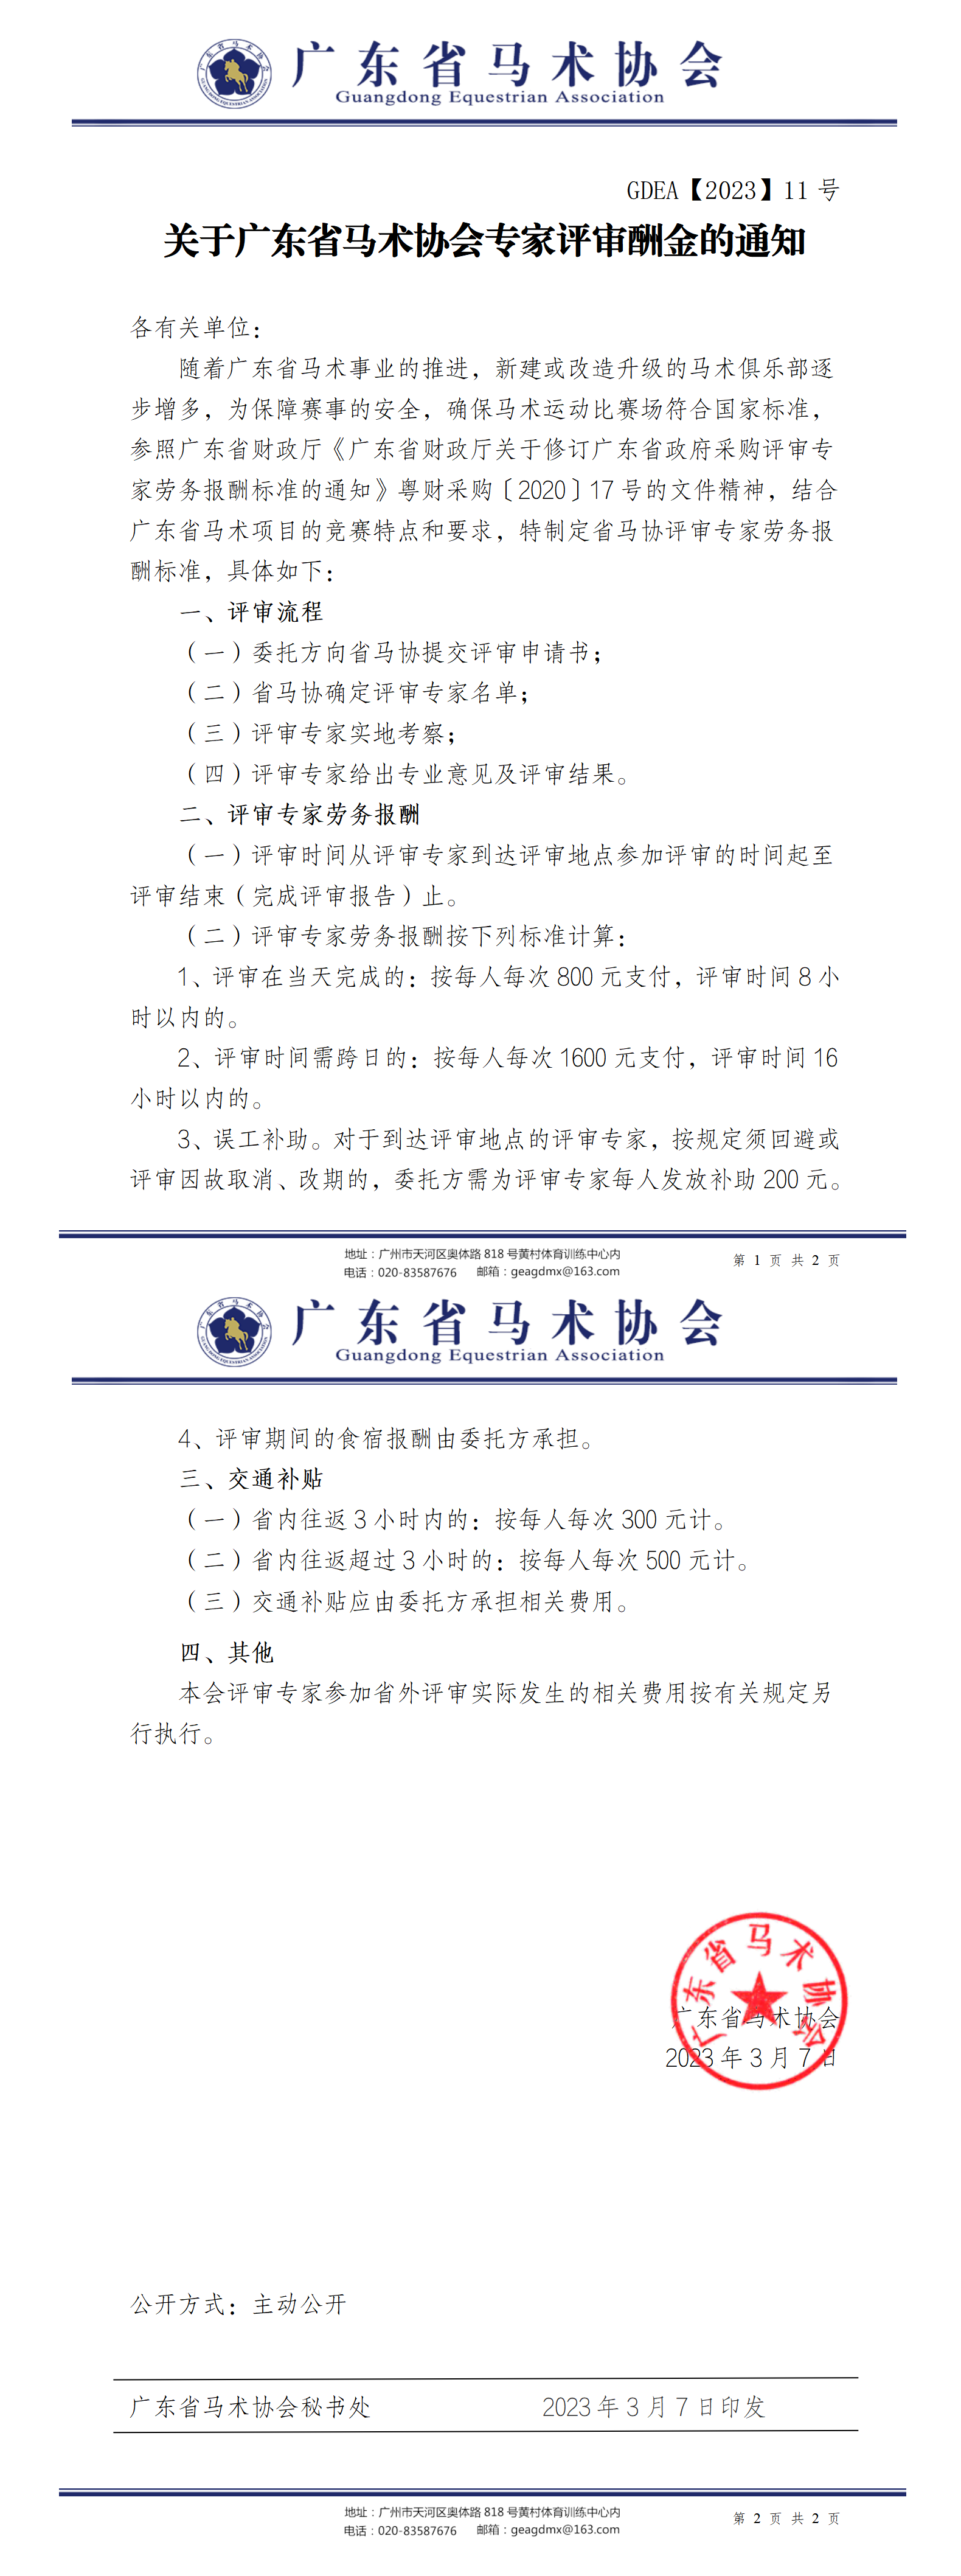 2023年11号文关于广东省马术协会专家评审酬金的通知_01.png